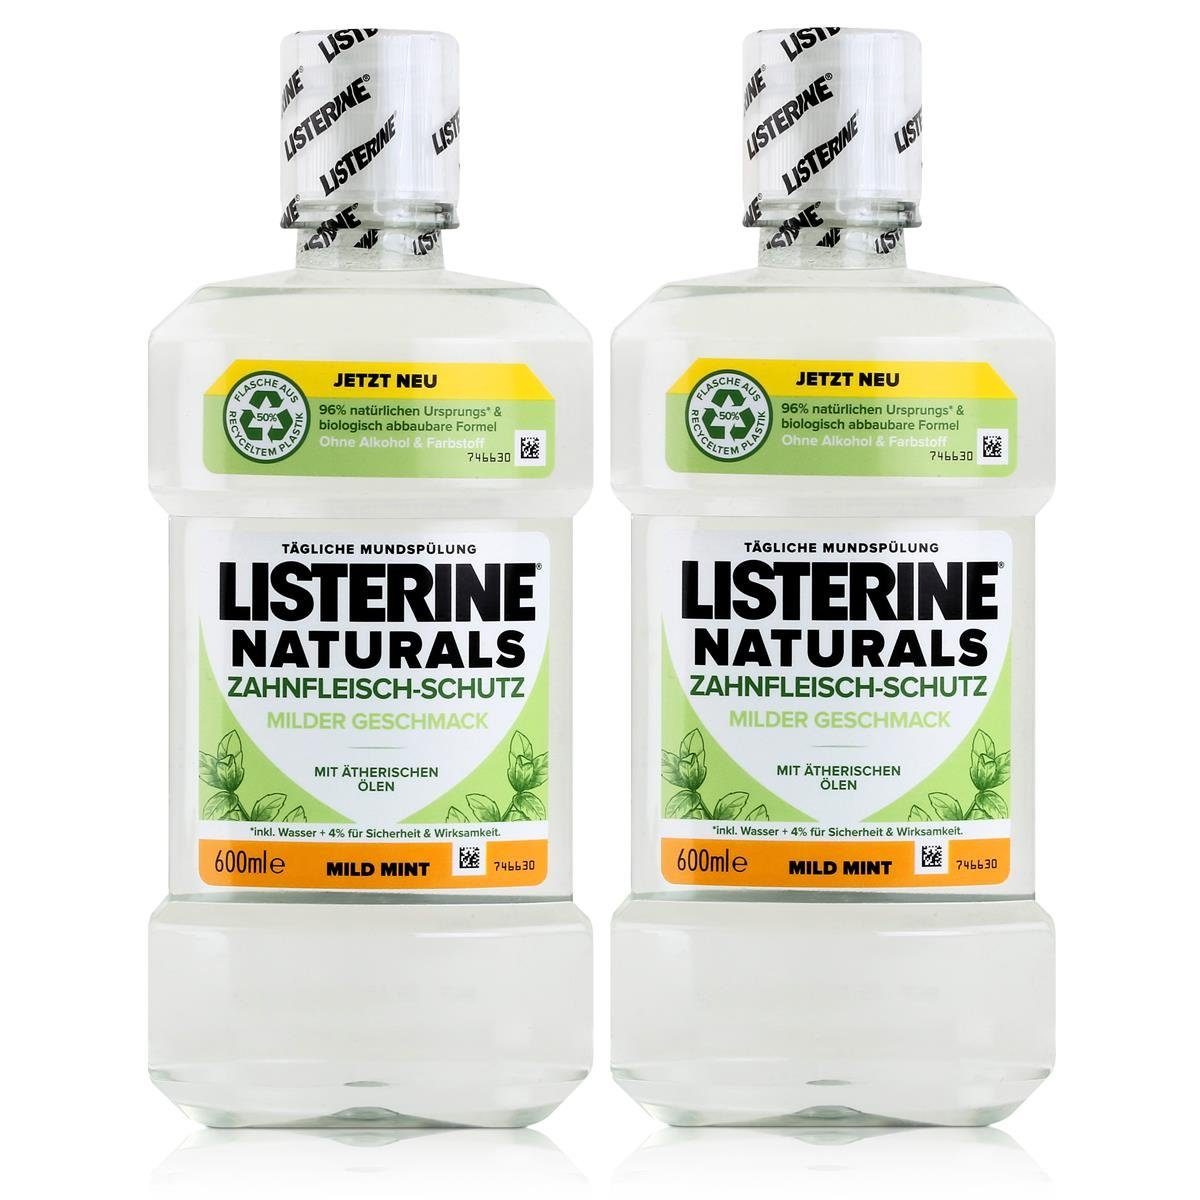 Listerine Mundspülung, Listerine Munspülung Naturals Zahnfleisch-Schutz 600ml - Mild Mint (2e